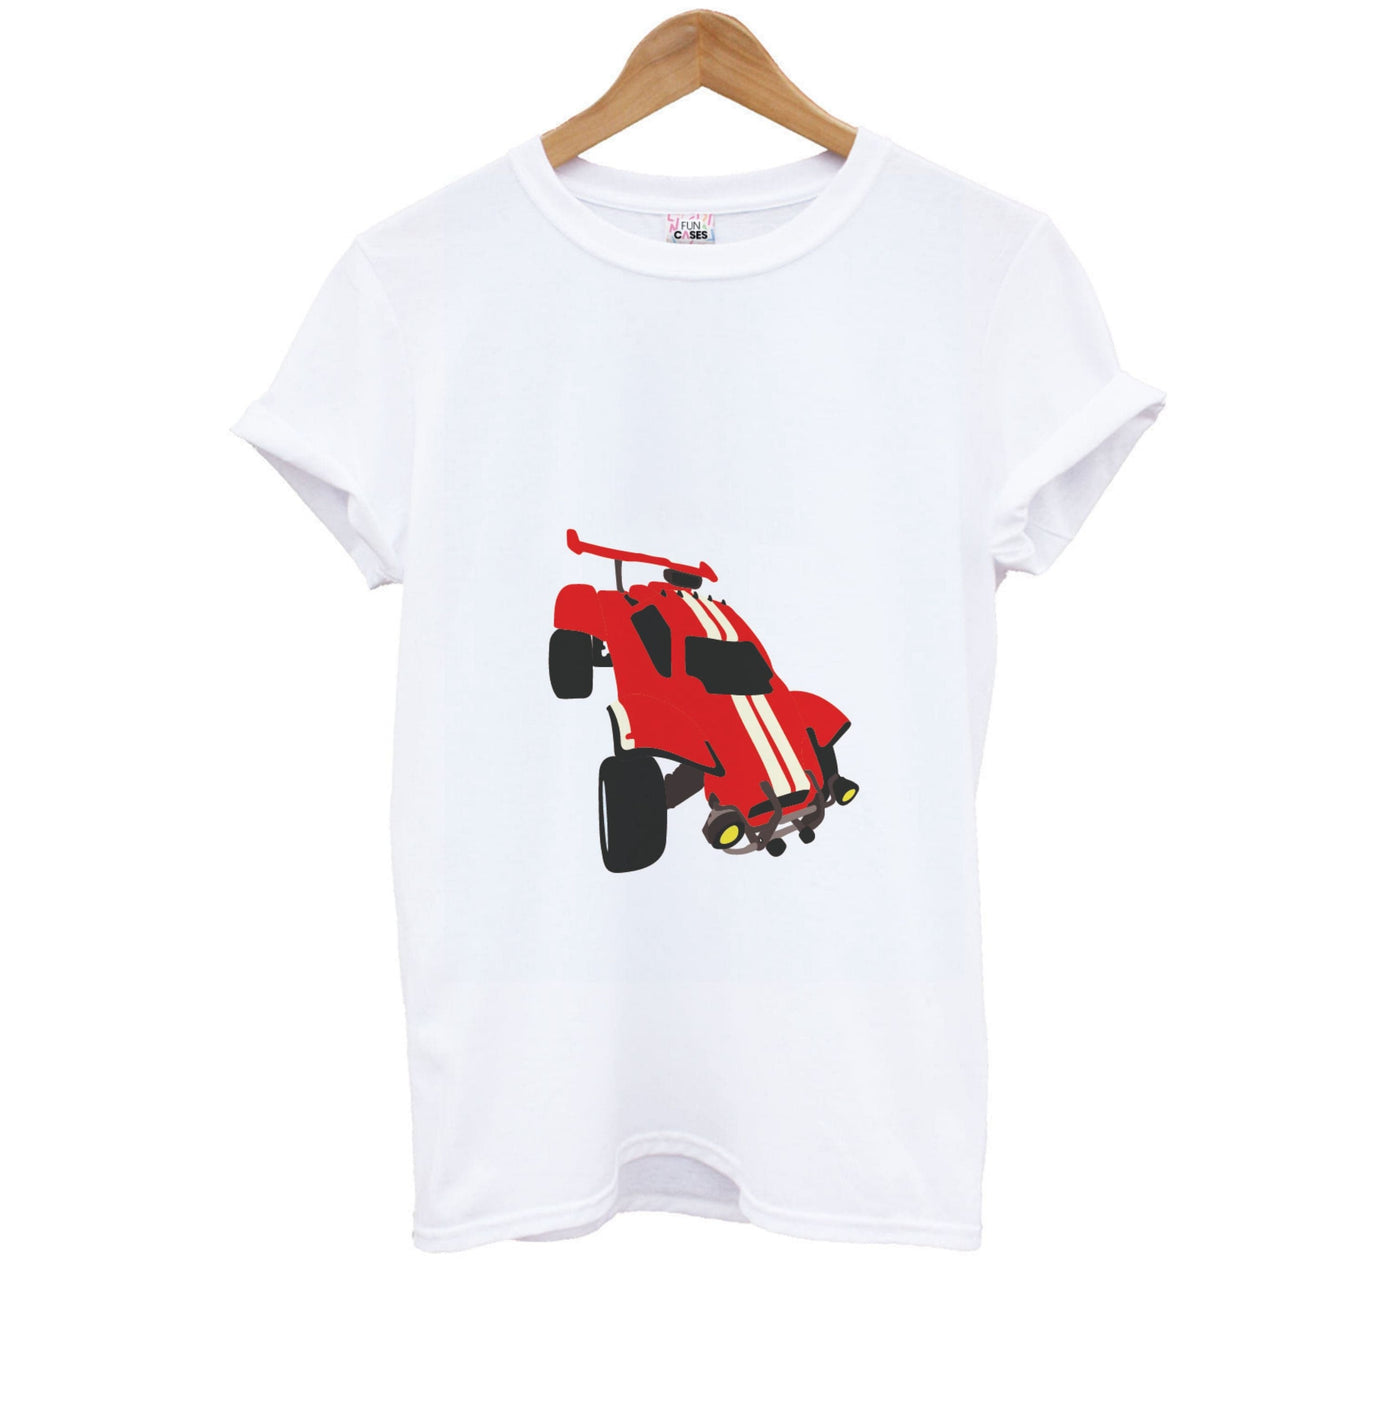 Red Octane - Rocket League Kids T-Shirt